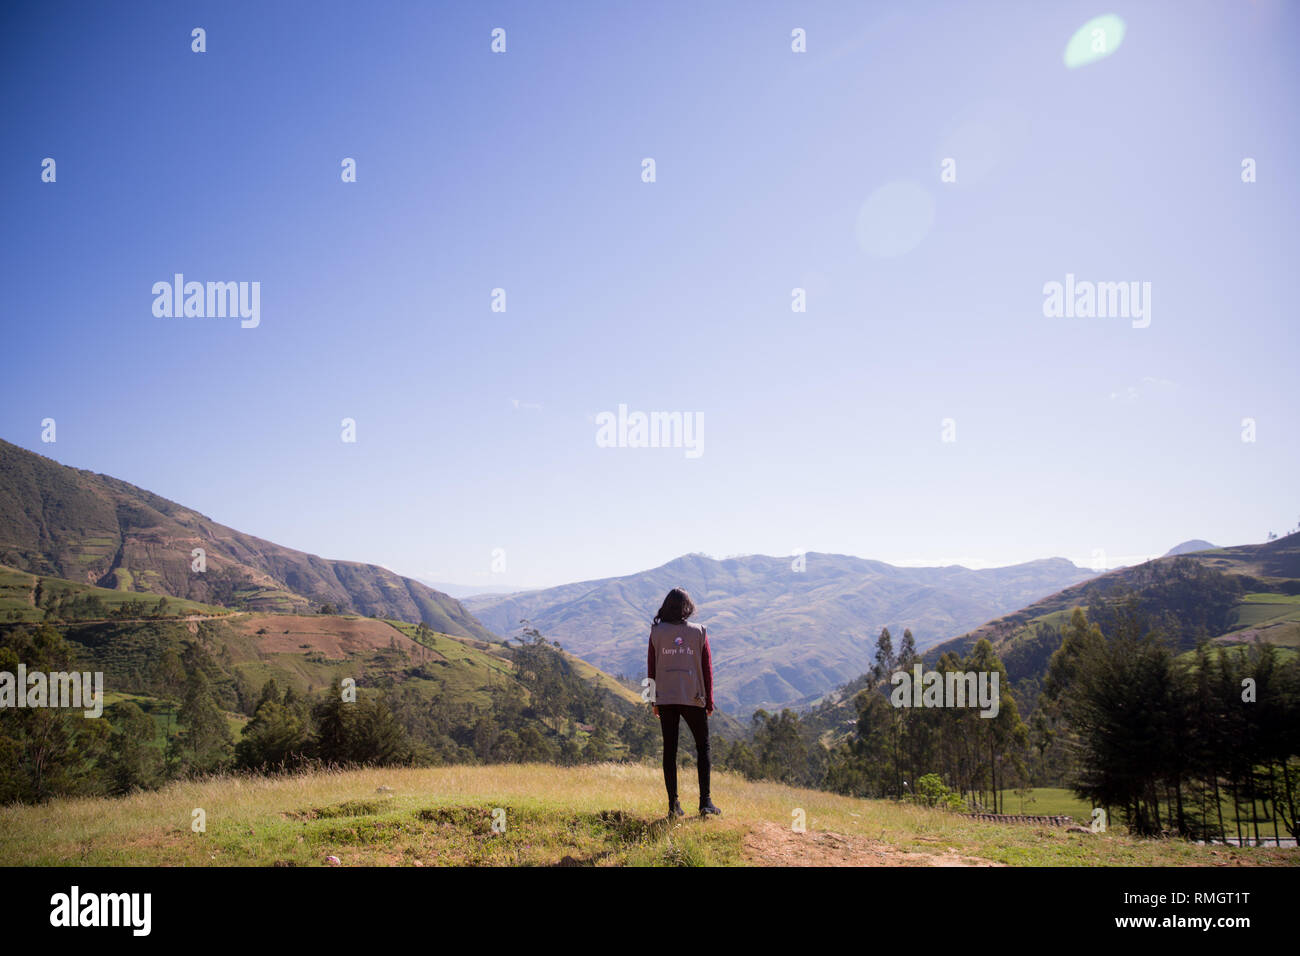 Las botijas fotografías e imágenes de alta resolución - Alamy